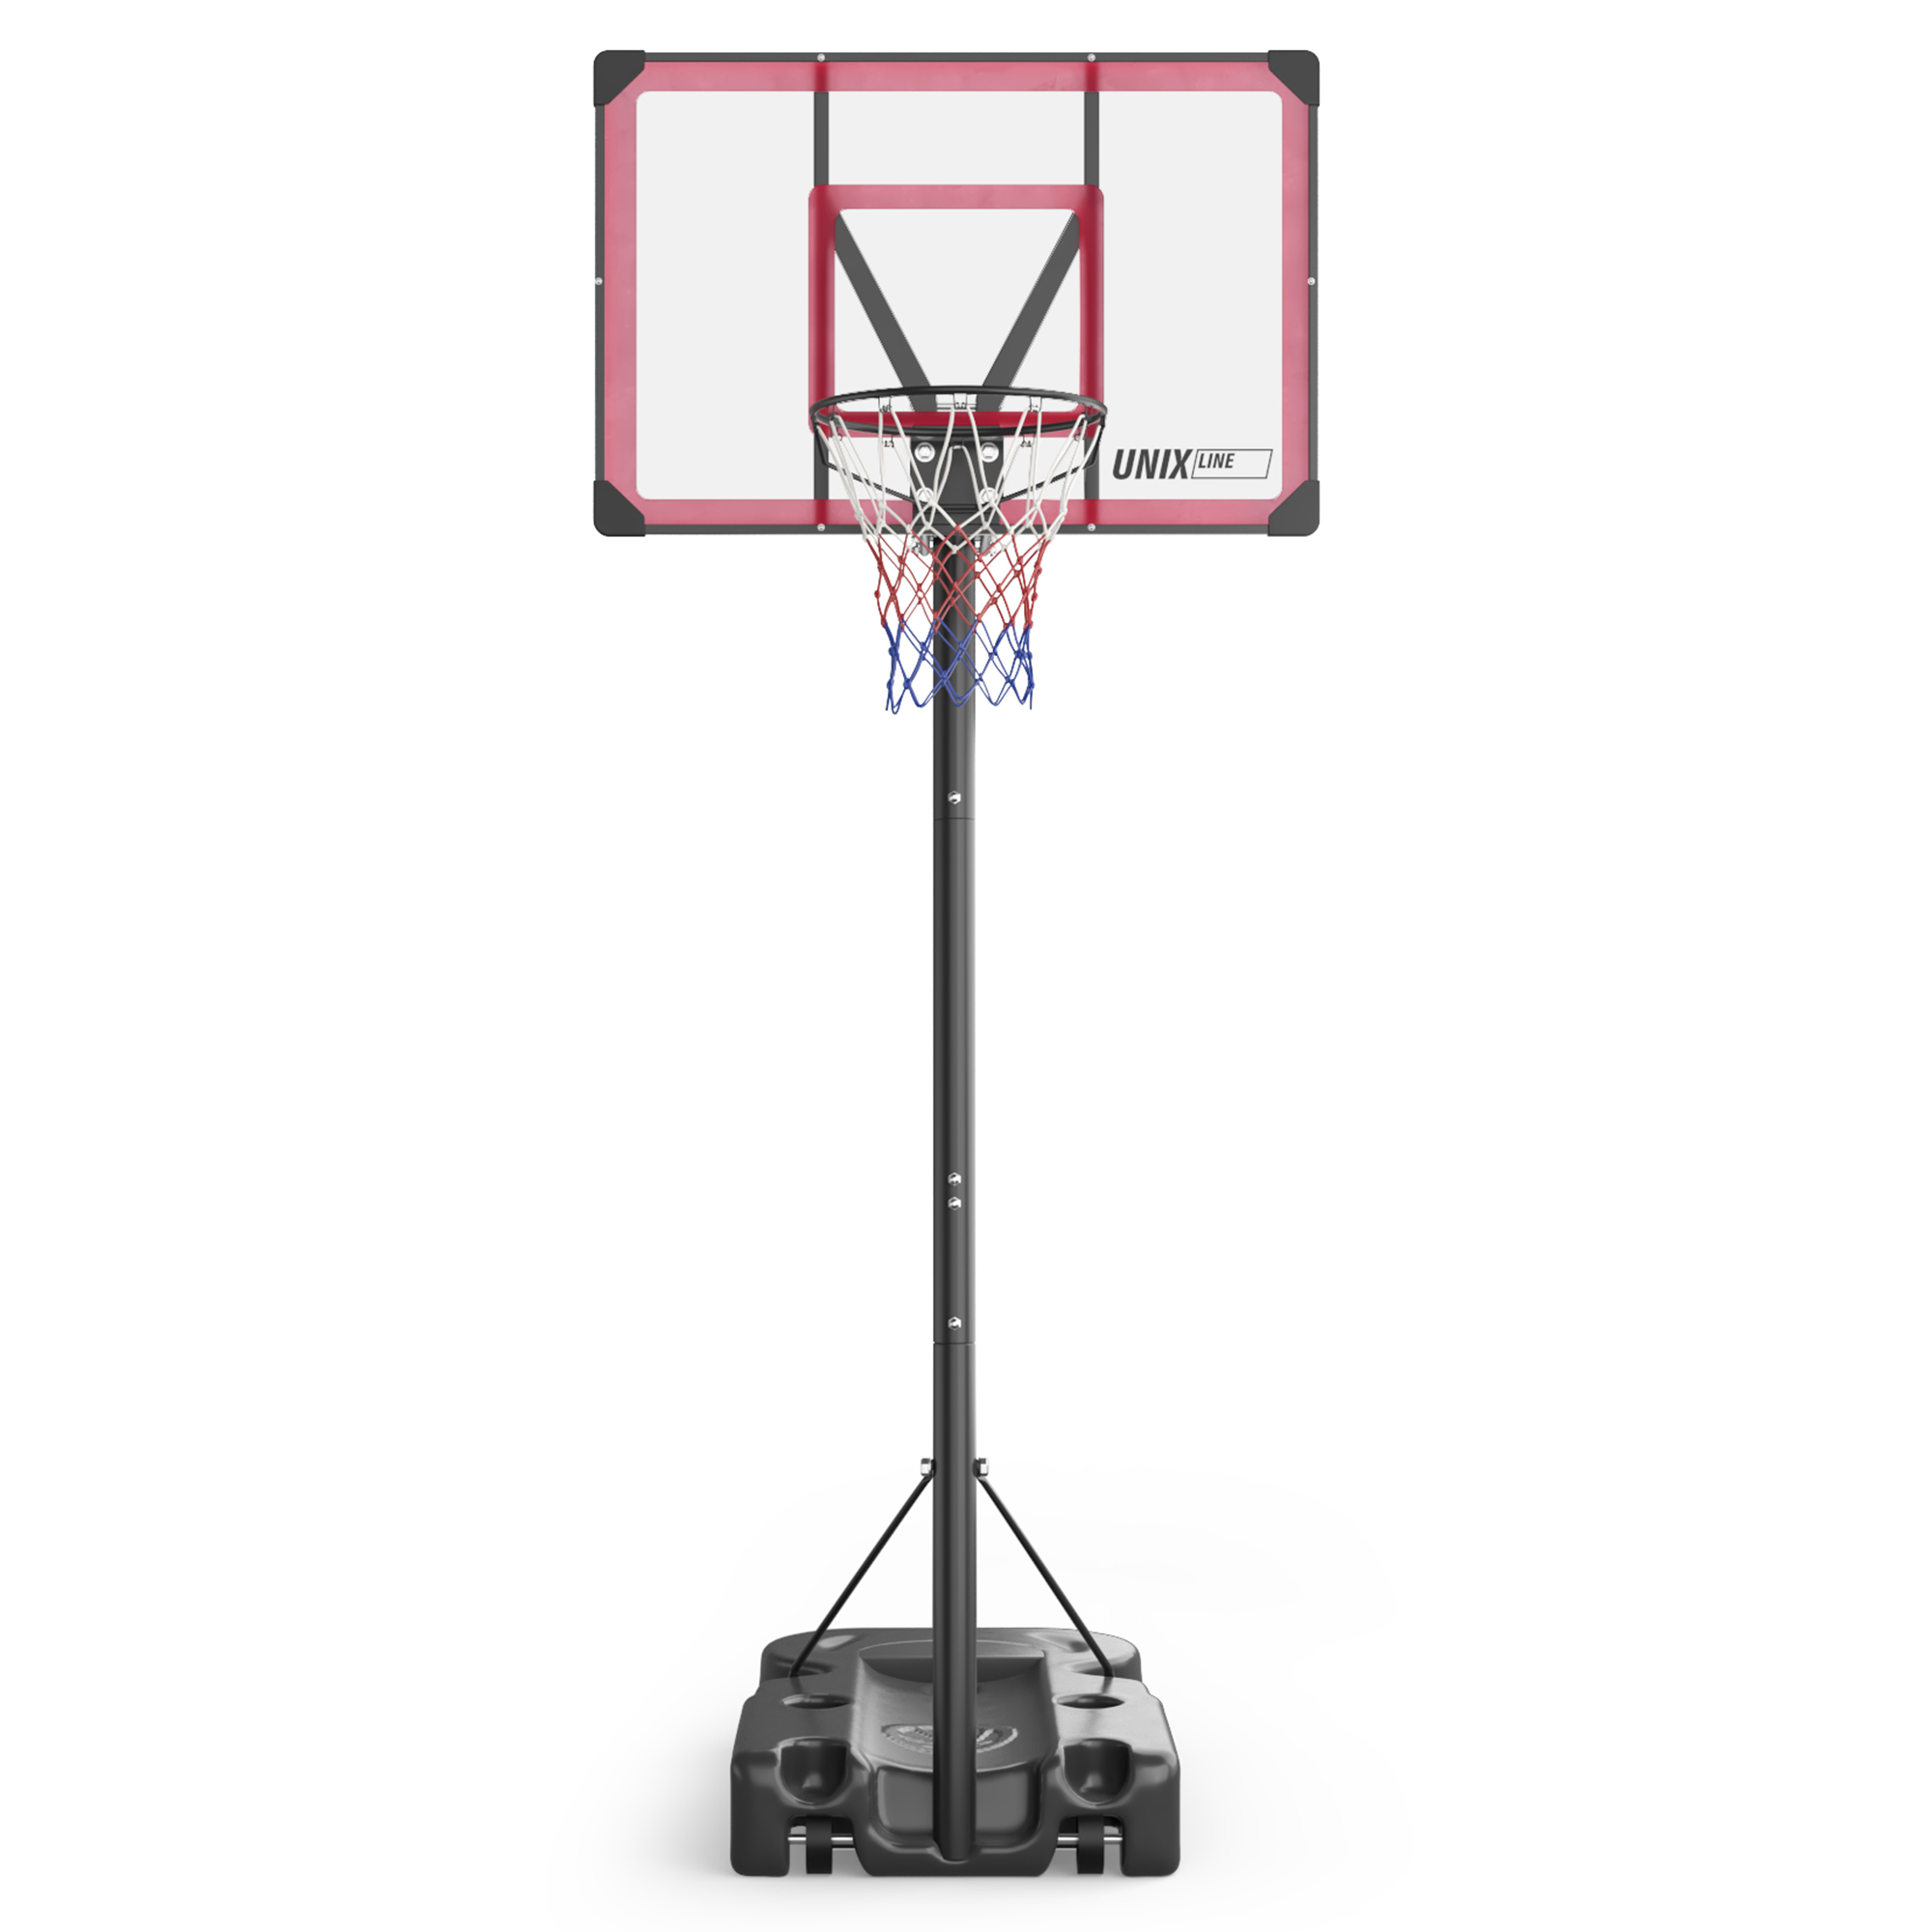 Баскетбольная стойка UNIX Line B-Stand-PC 48"x32" R45 H230-305 см